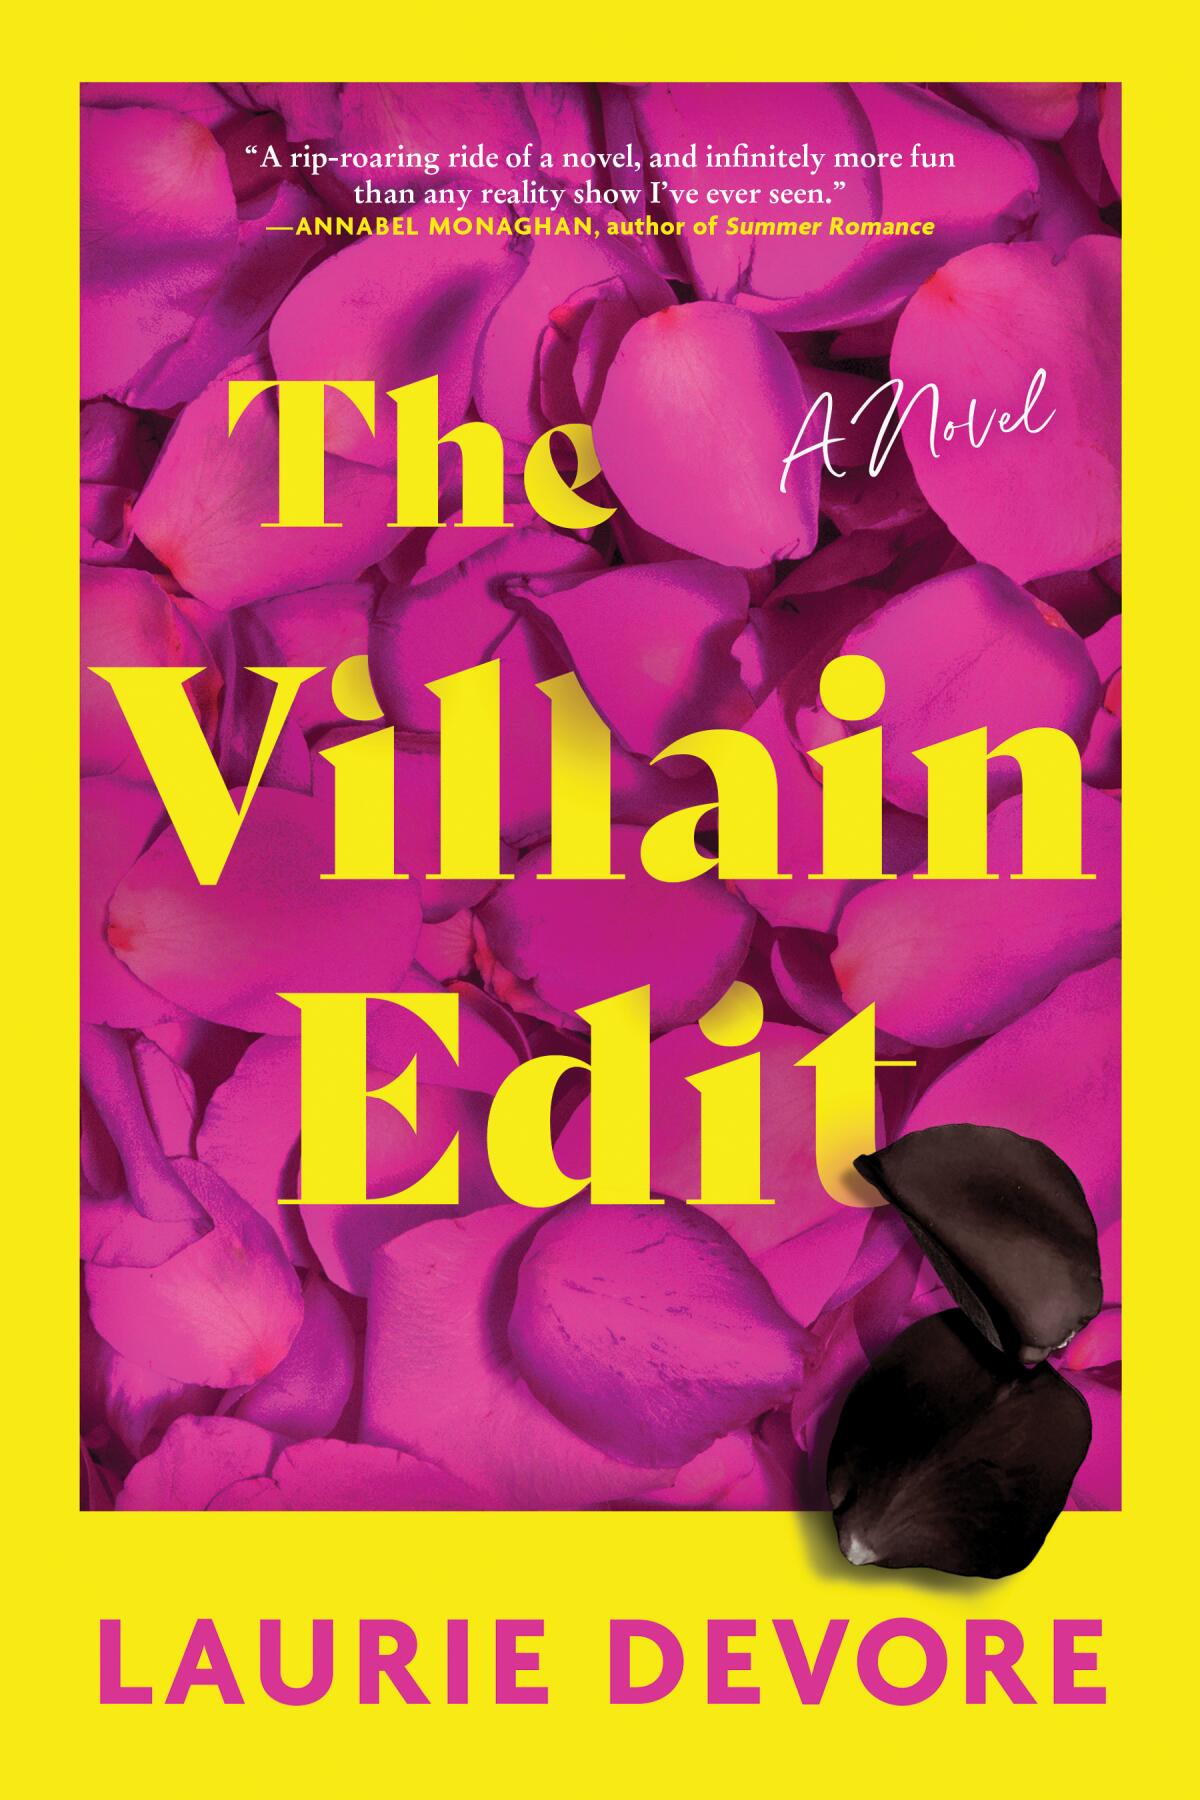 "The Villain Edit" by Laurie Devore